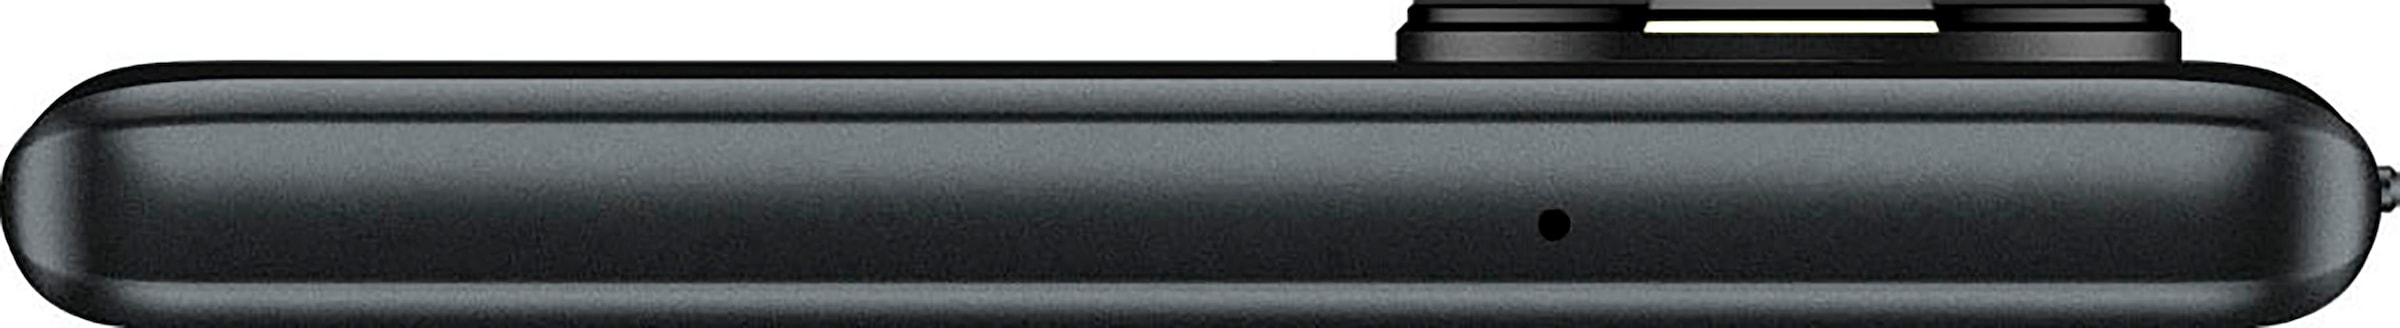 ZTE Smartphone »Blade V50 5G«, schwarz, 16,94 cm/6,67 Zoll, 256 GB Speicherplatz, 50 MP Kamera